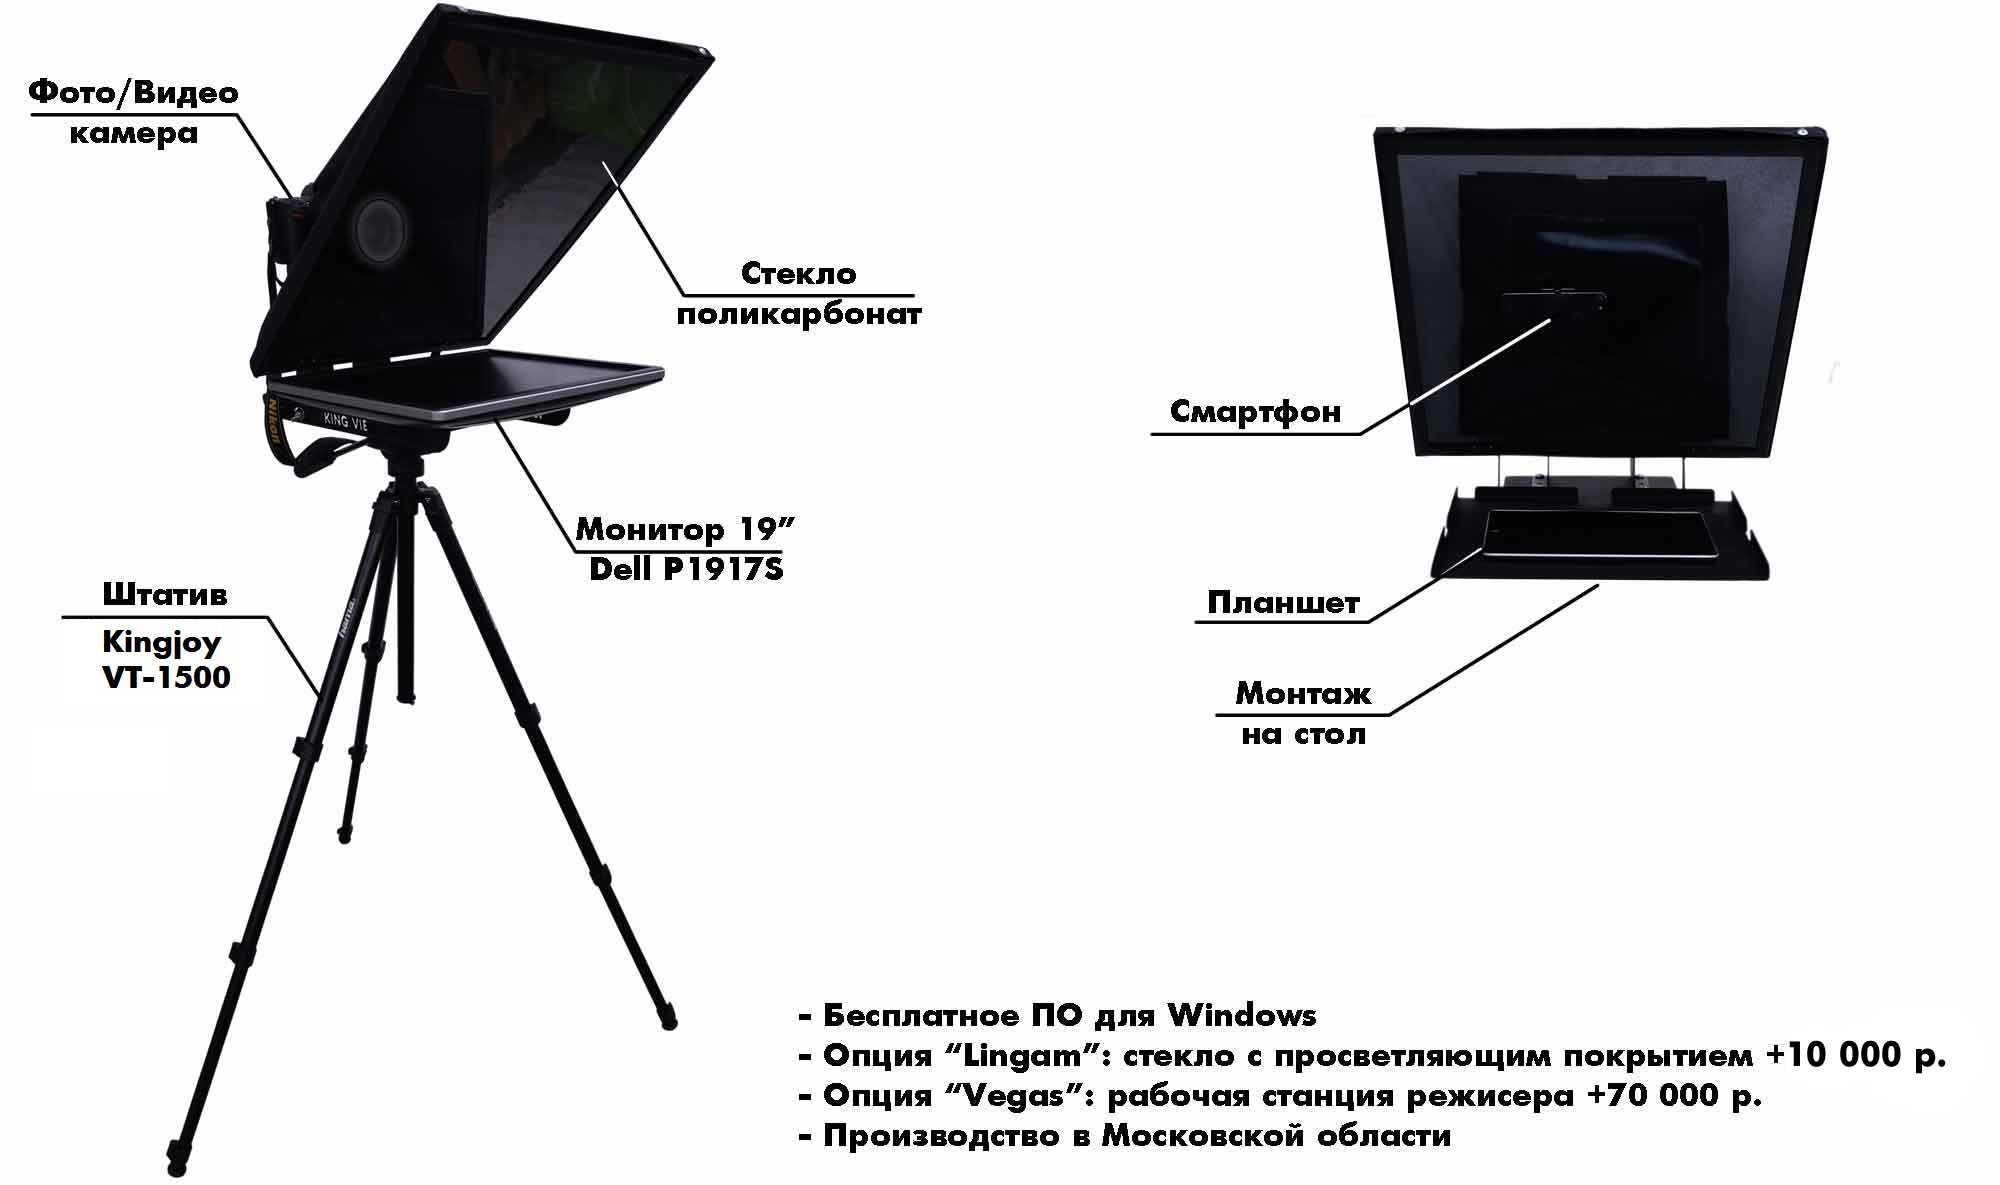 Профессиональный студийный телесуфлер KingView KV-150